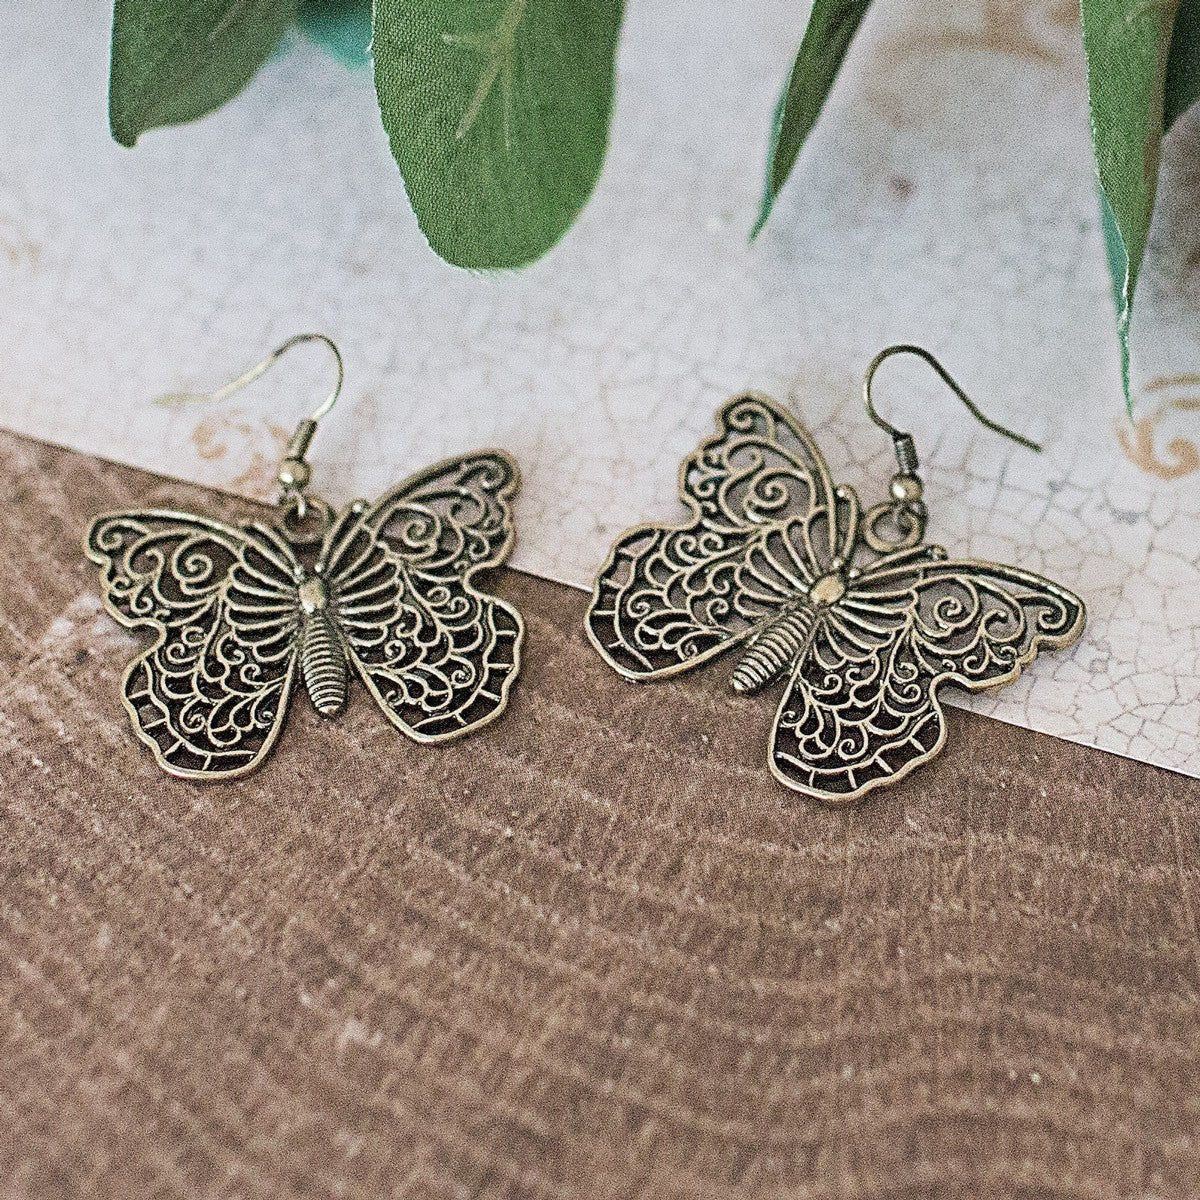 1.7 inch Wings Of A Butterfly Dangle Earrings